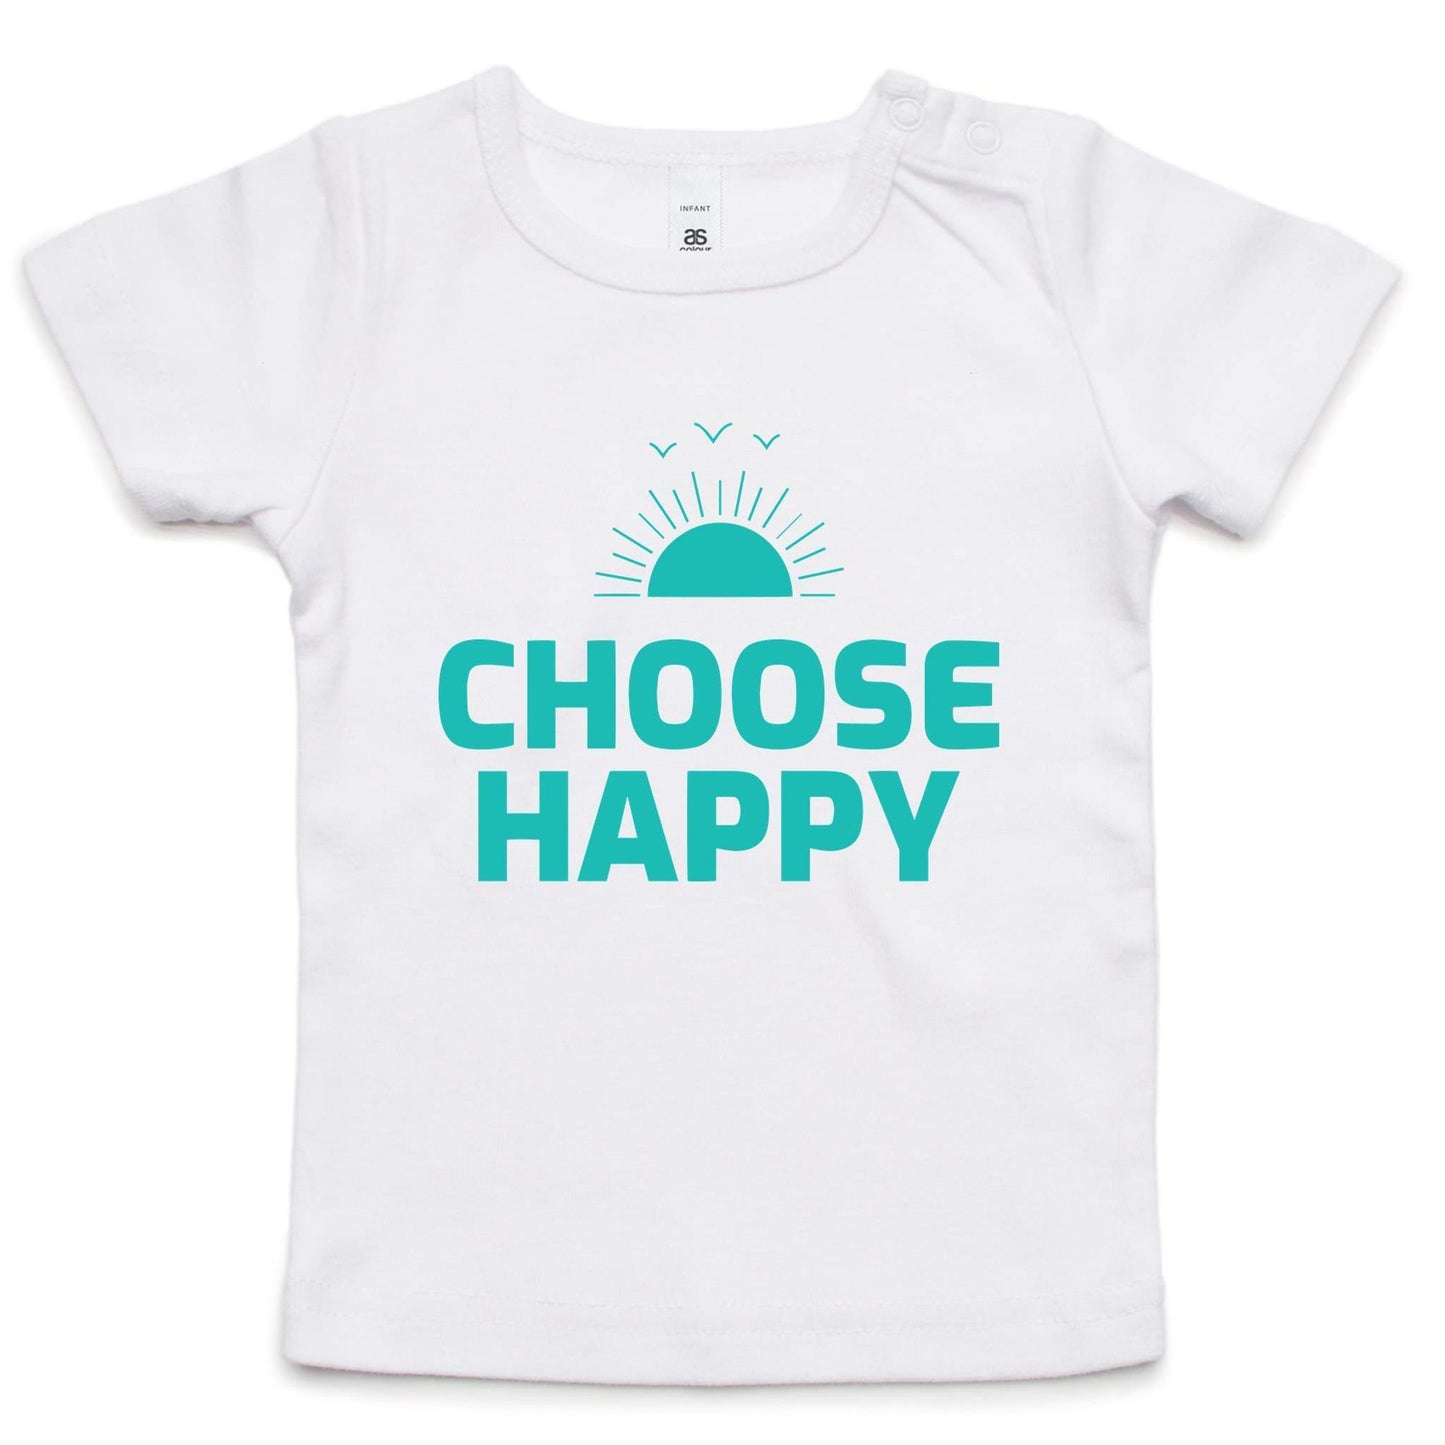 Choose Happy - Baby T-shirt White Baby T-shirt kids